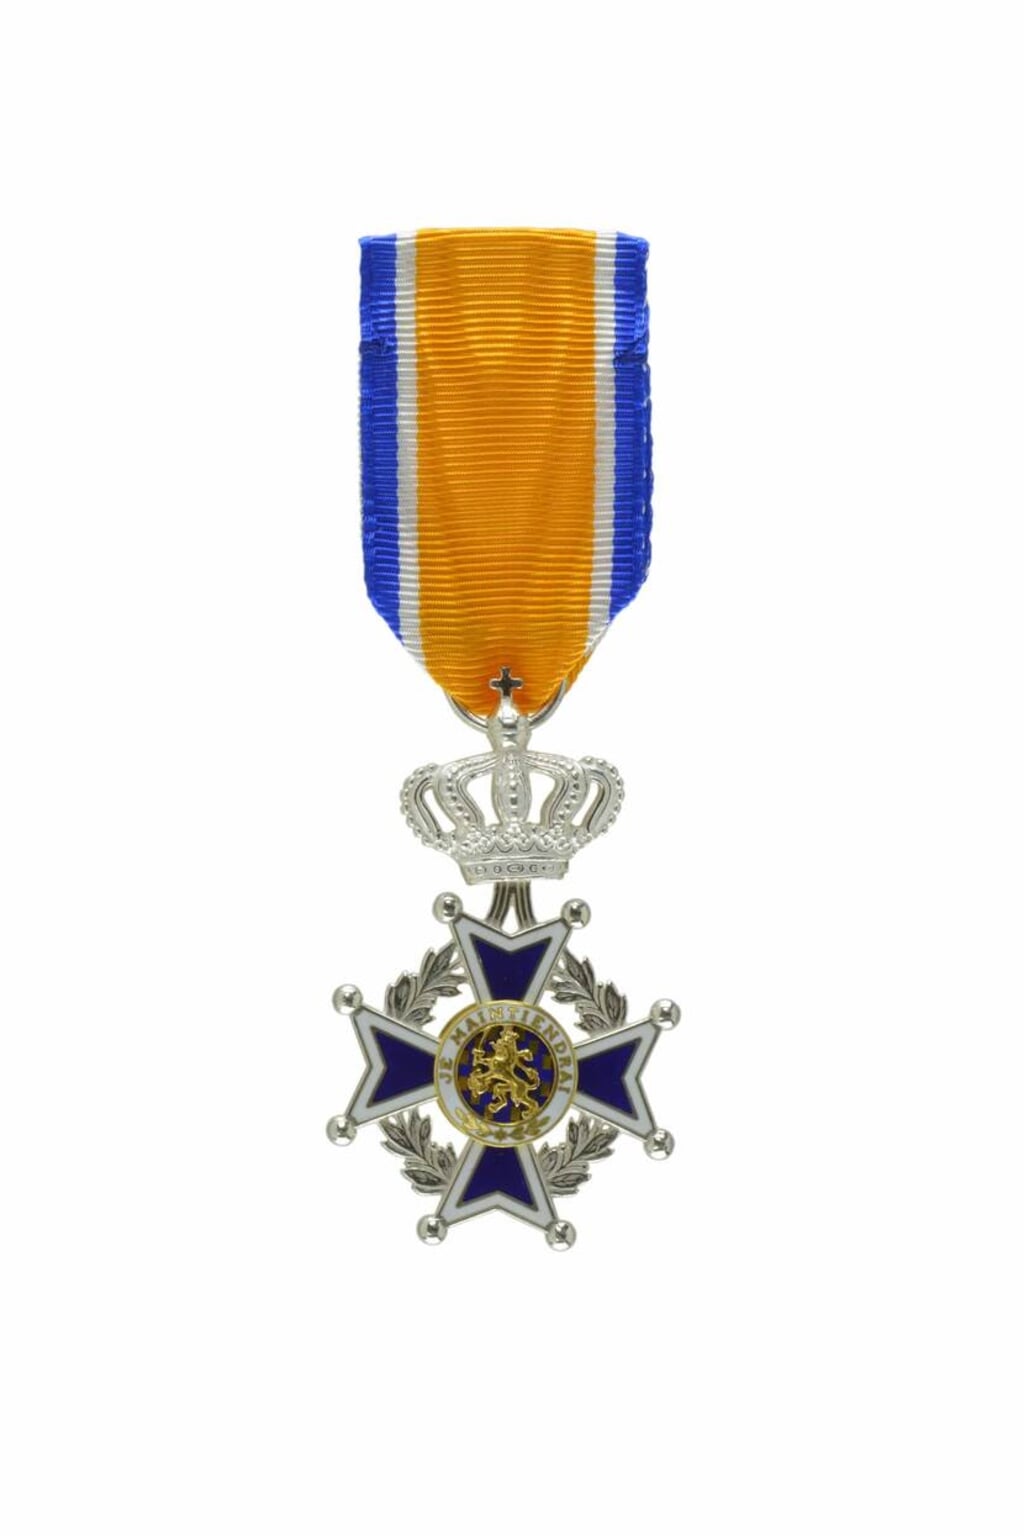 foto: Onderscheiding Lid in de Orde van Oranje-Nassau